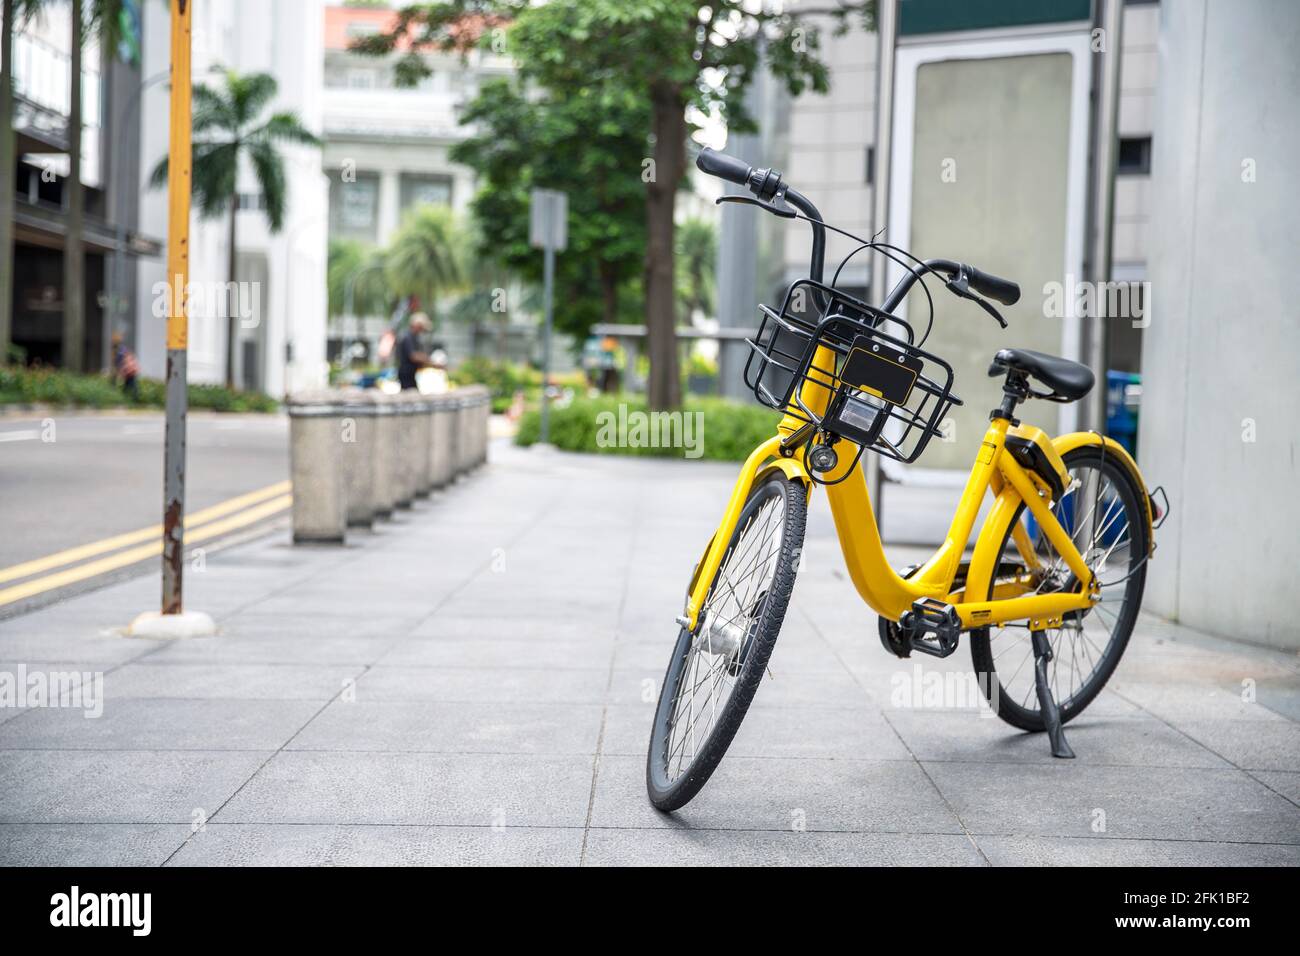 Gelbe Fahrrad im öffentlichen Park Gebäude Hintergrund und Blick Landschaft Stockfoto